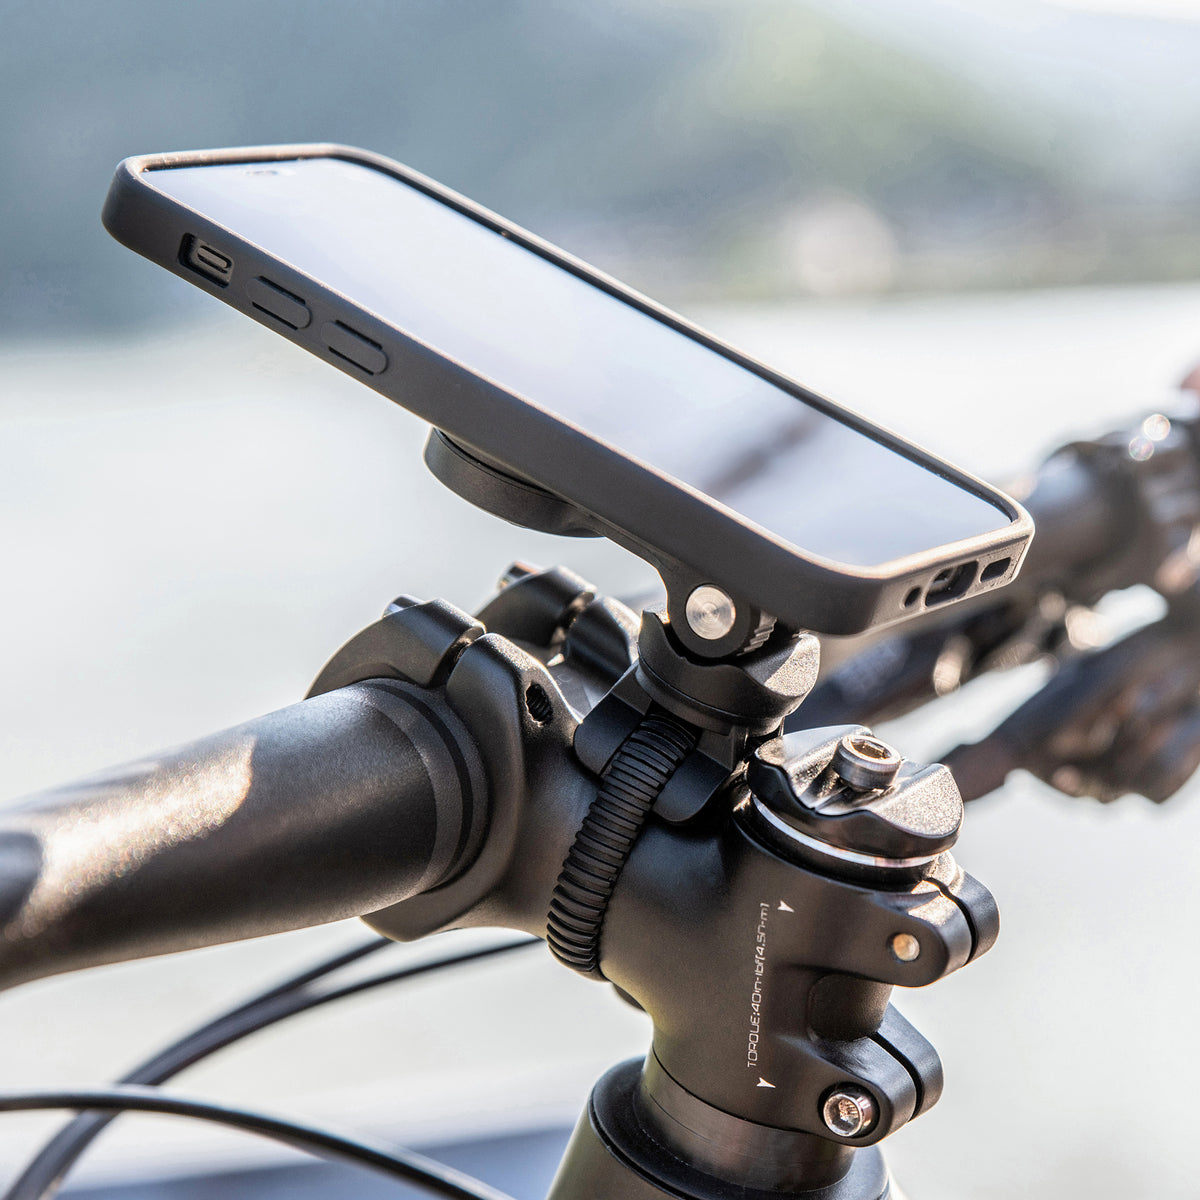 Adaptateur de coque sport iPhone pour vélo + BMX HZ2145 / HZ2149, Accessoires divers pour iPhone